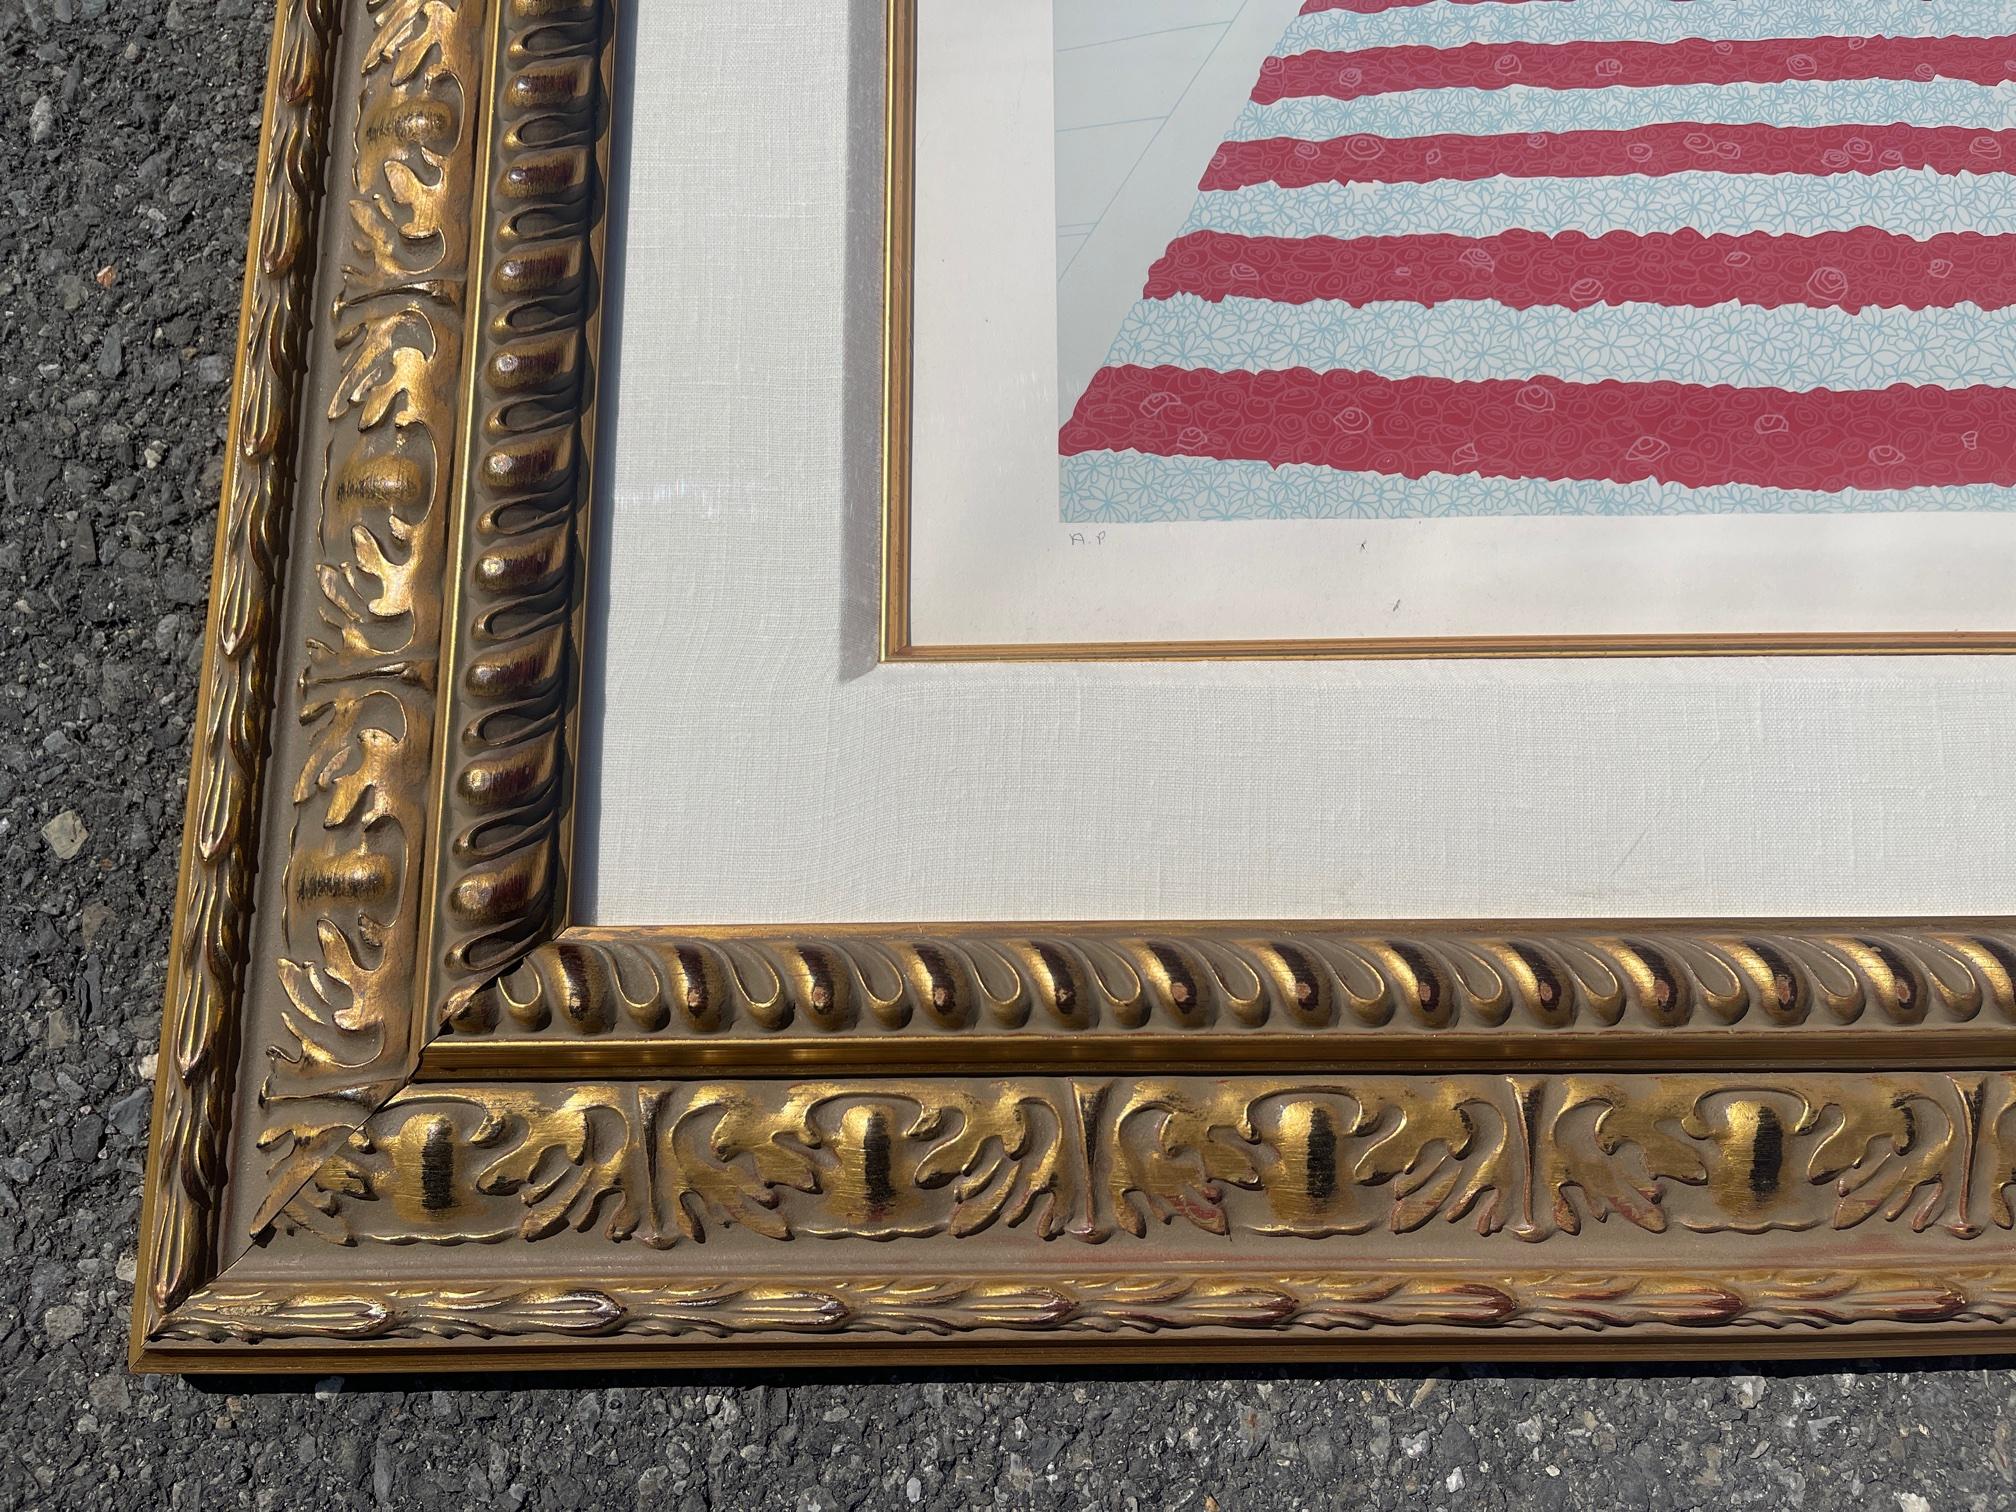 Serigraphie ROMAIN DE TIRTOFF von Erte Lafayette, ca. 1970er-Jahre 1980er-Jahre. Es handelt sich um einen AP (Künstlerabzug) In wunderbarem Zustand. Anfangs gerahmt in einem goldenen Rahmen. Art-Déco-Stil, tolle Farben auf diesem.
Ein Pseudonym von